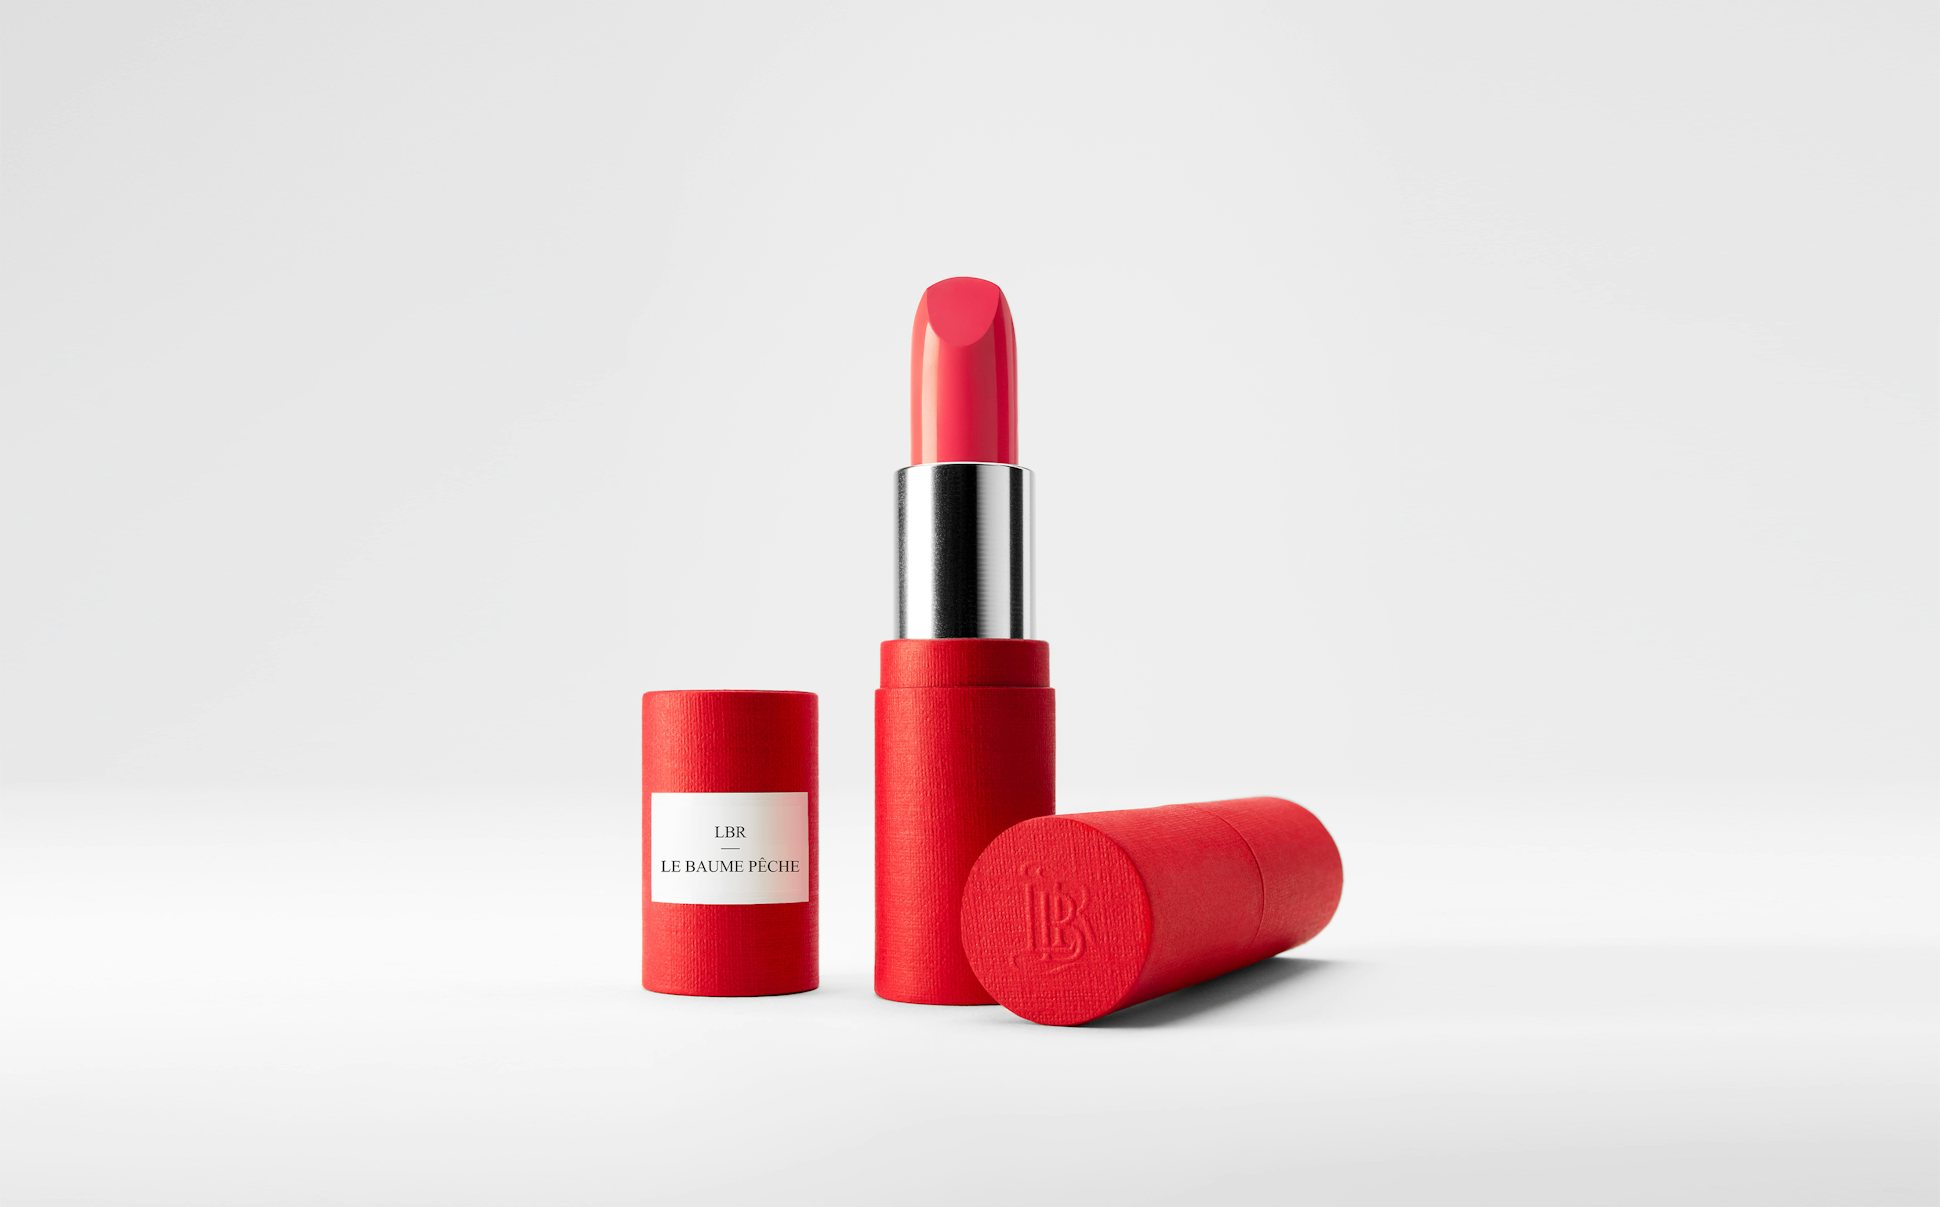 La bouche rouge Peach balm lipstick in the red paper case